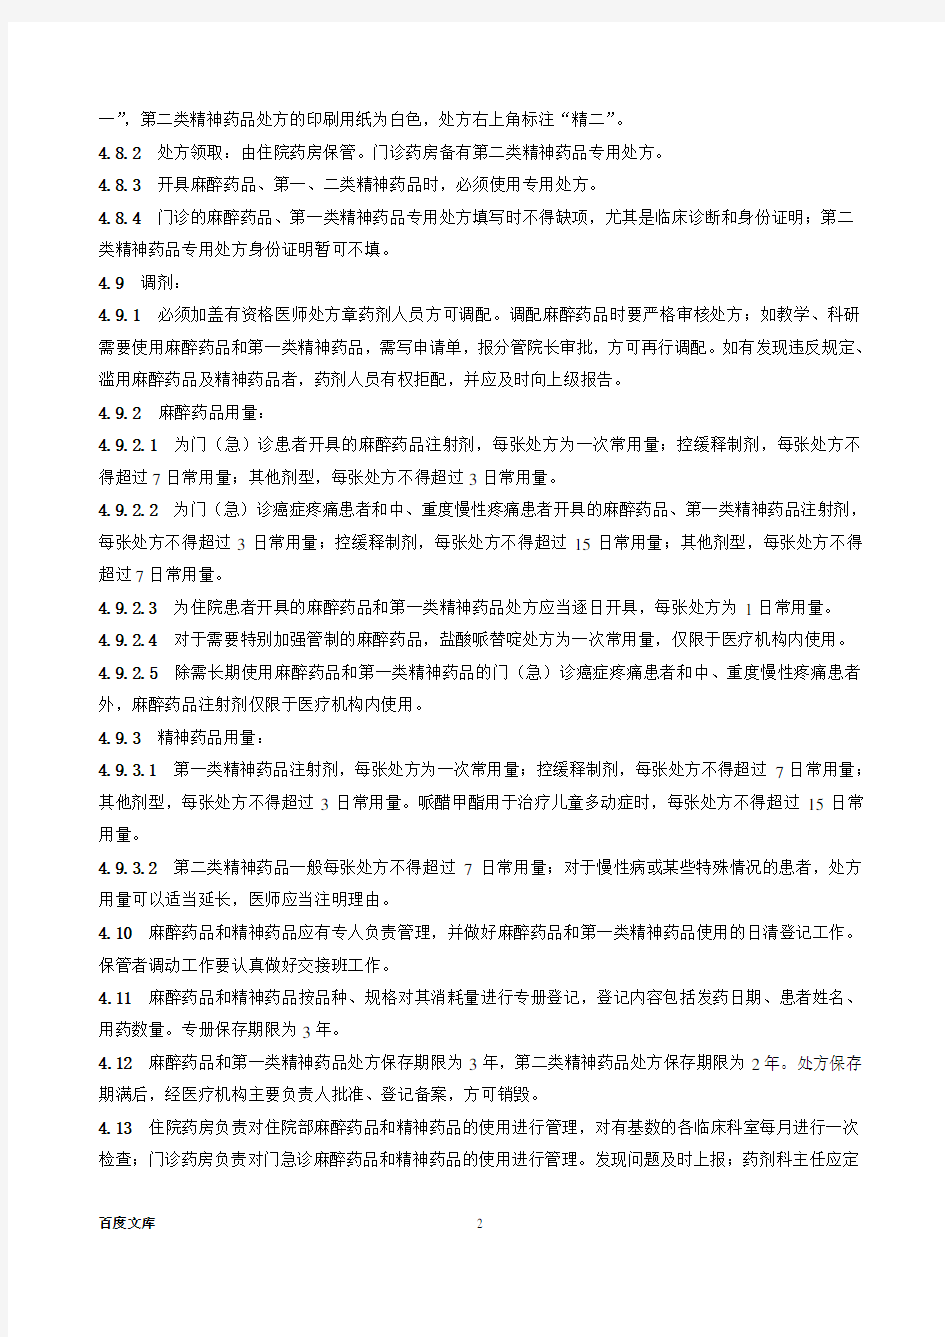 2020年上海市第十人民医院麻醉药品和精神药品管理实施细则doc-参照模板